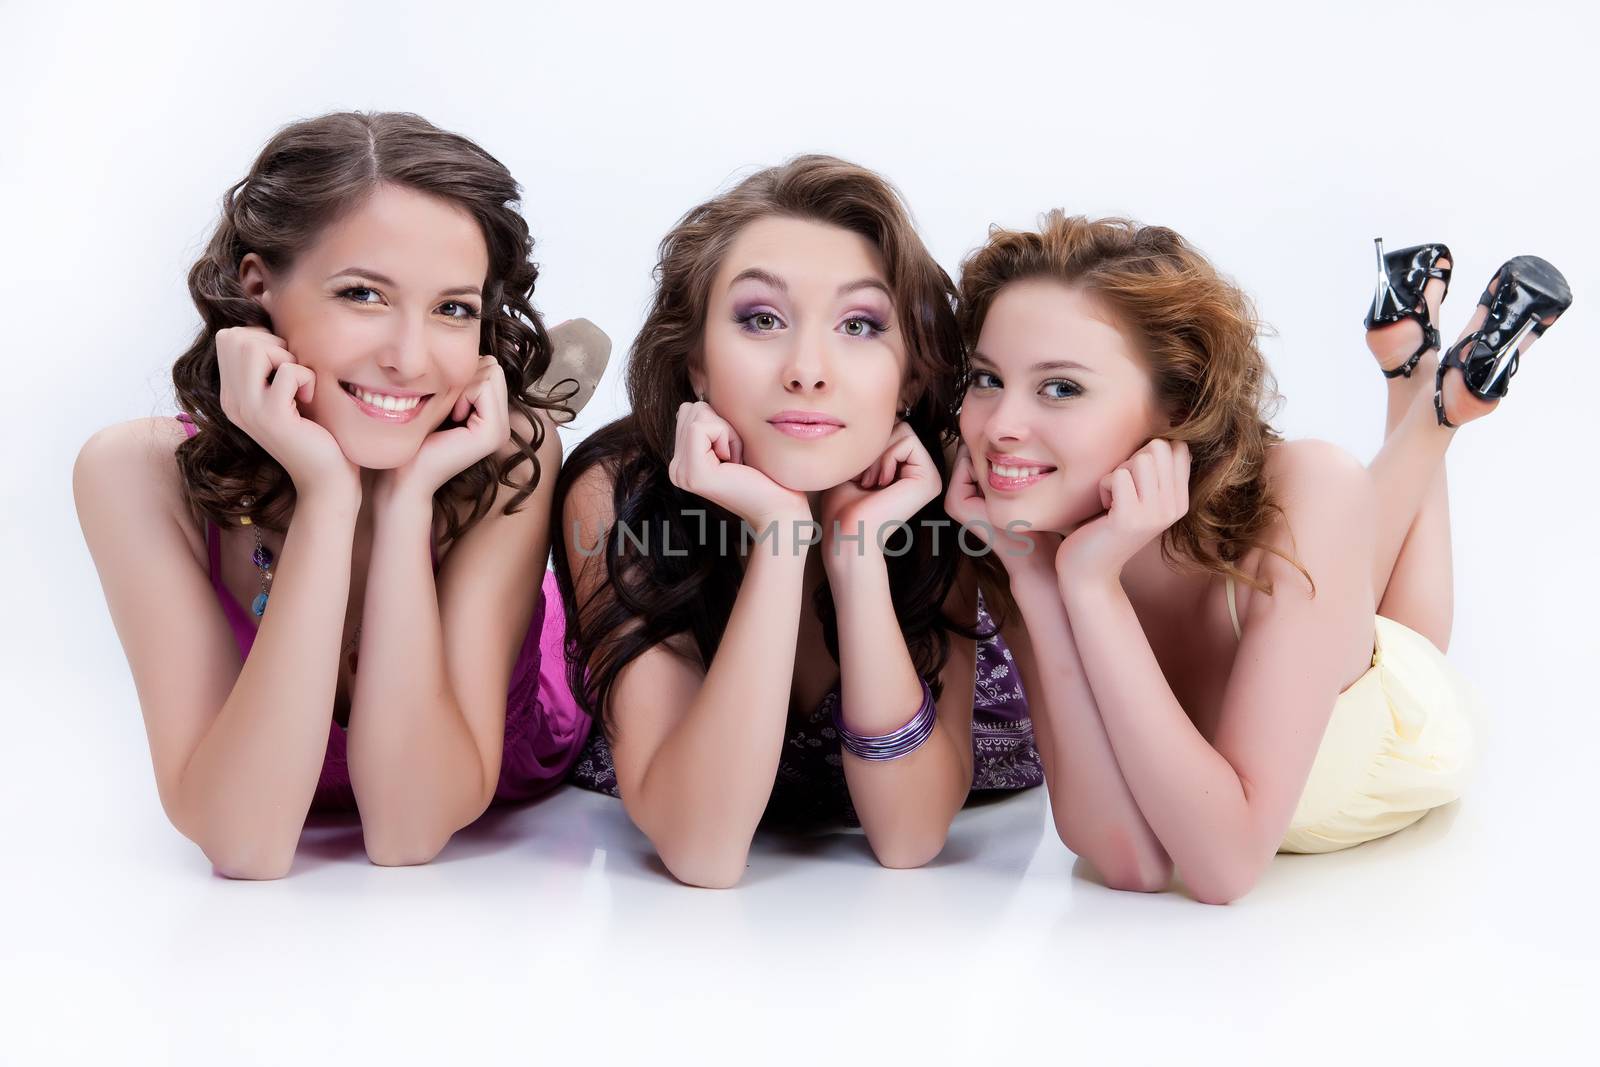 Three Beautiful Young Women by Fotoskat